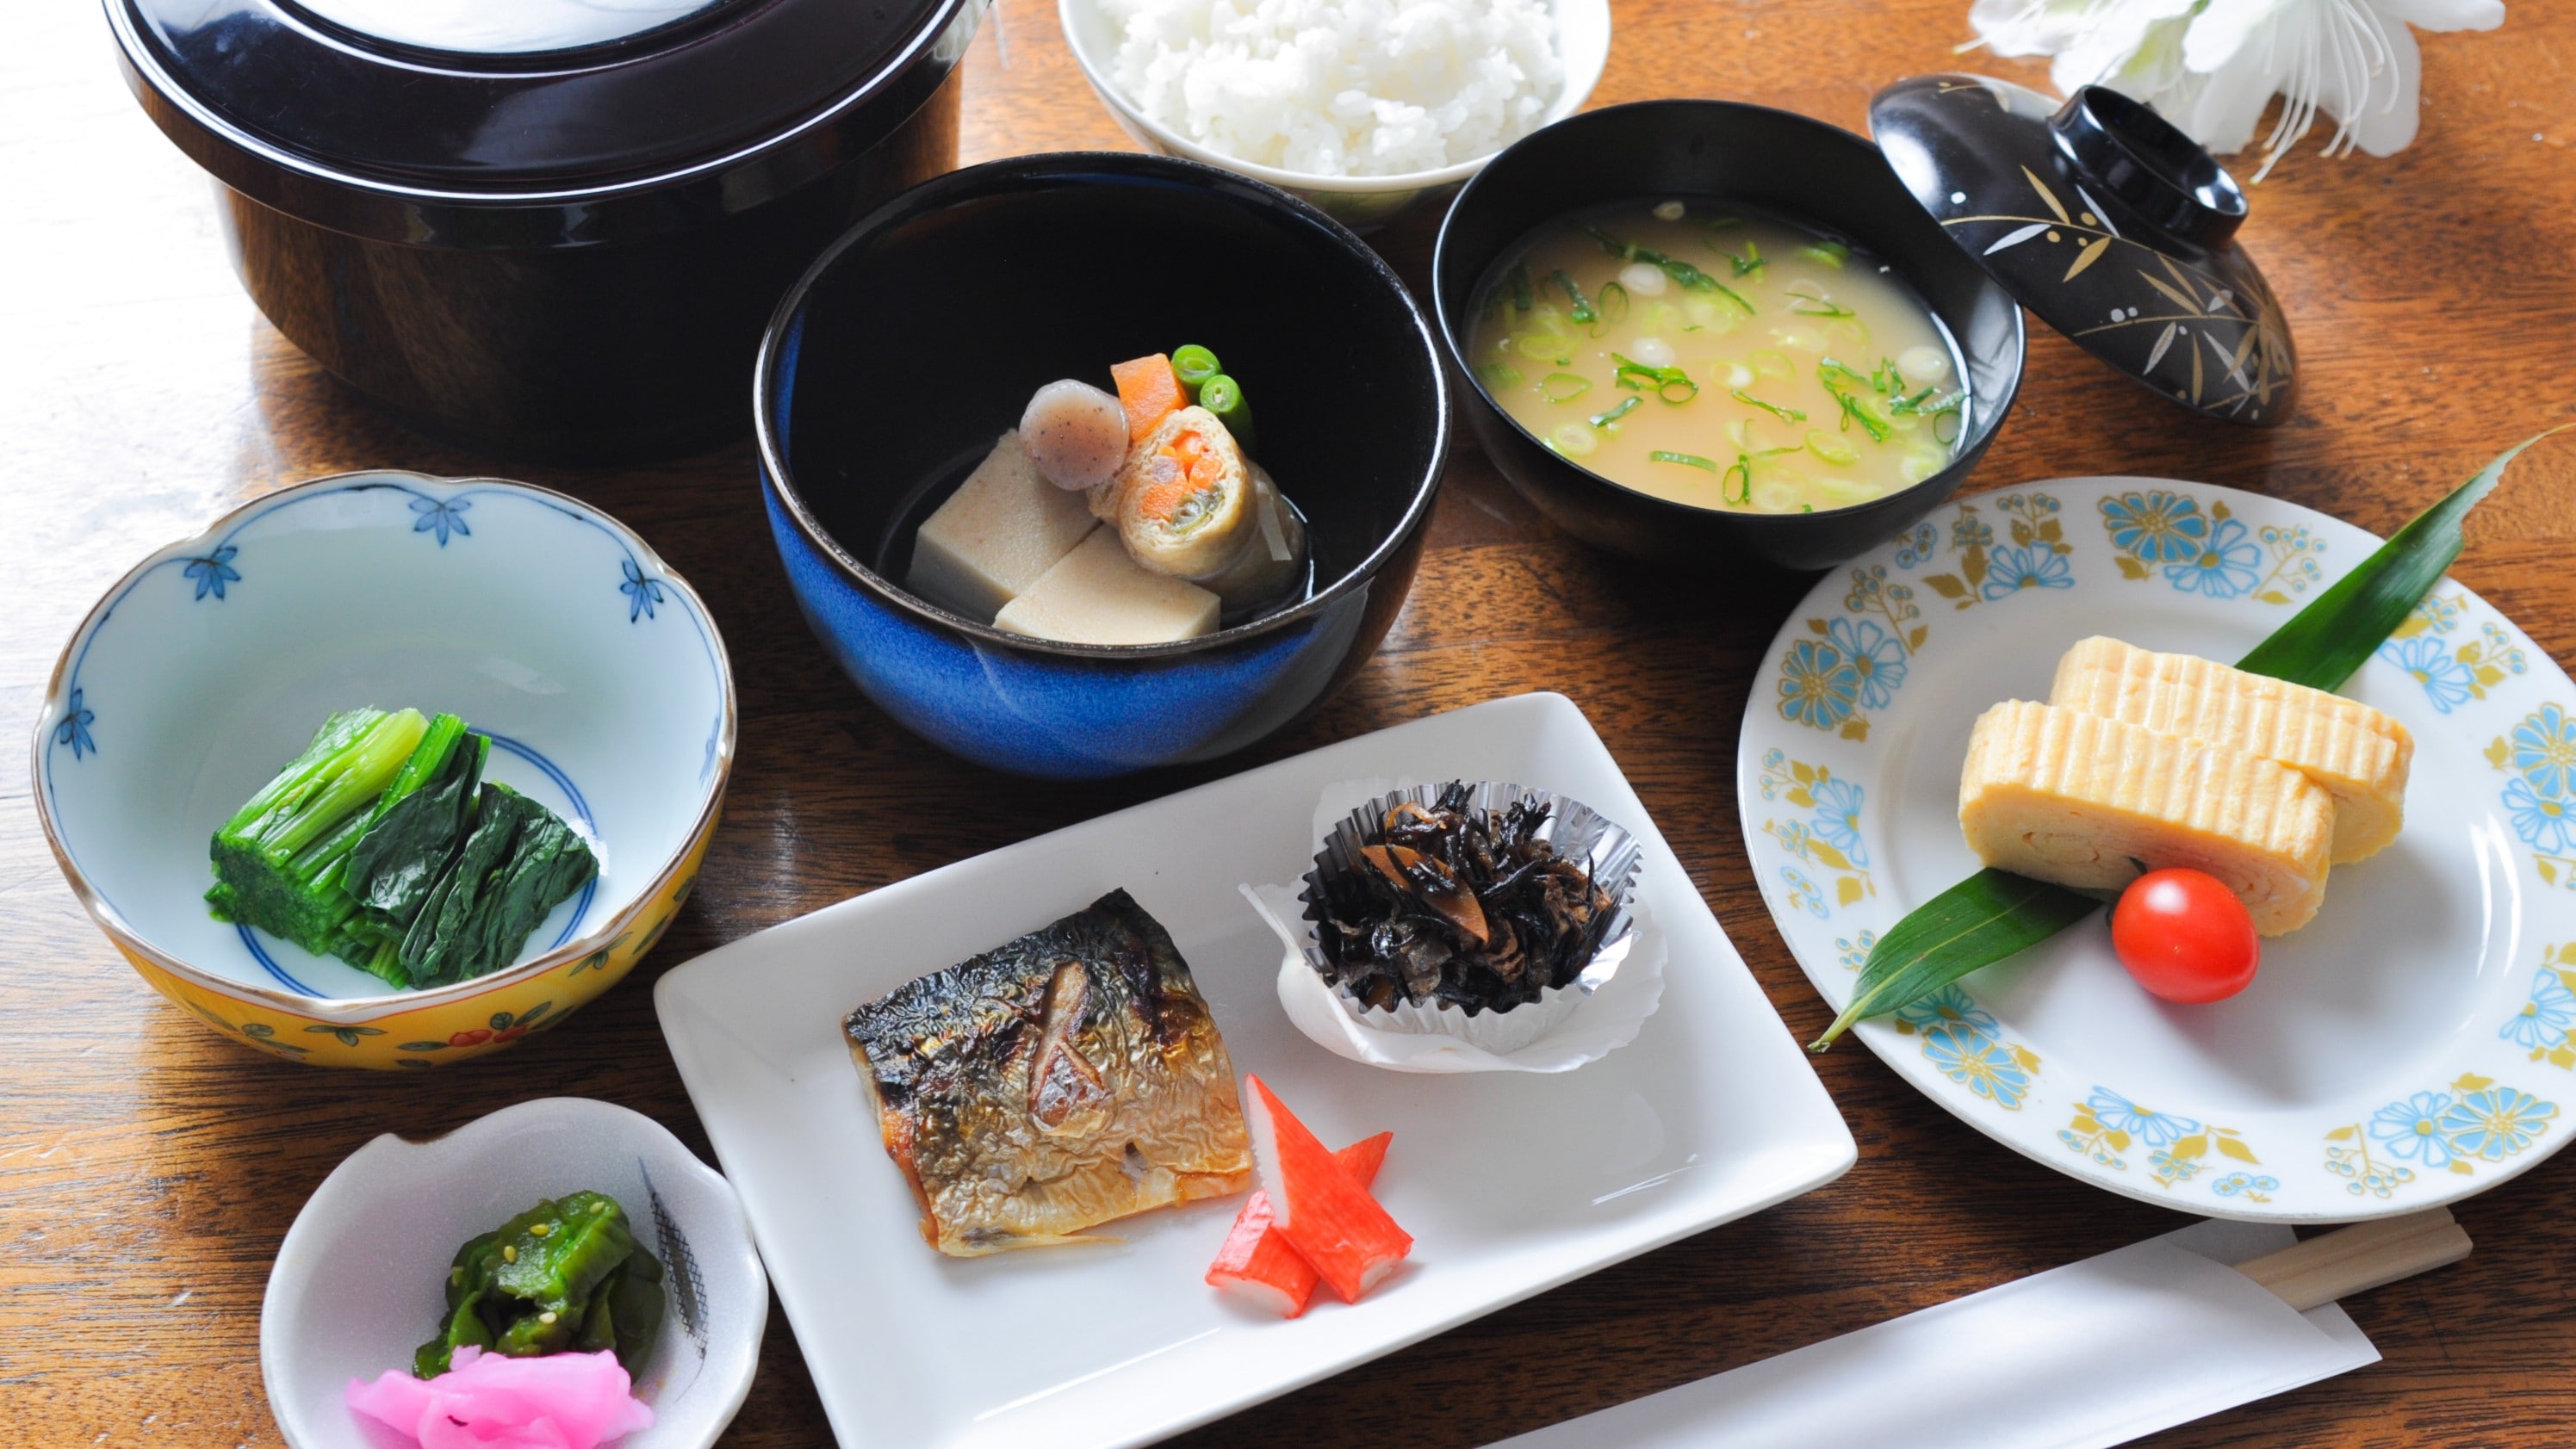 人气日式早餐、煎蛋卷、烤鲭鱼等